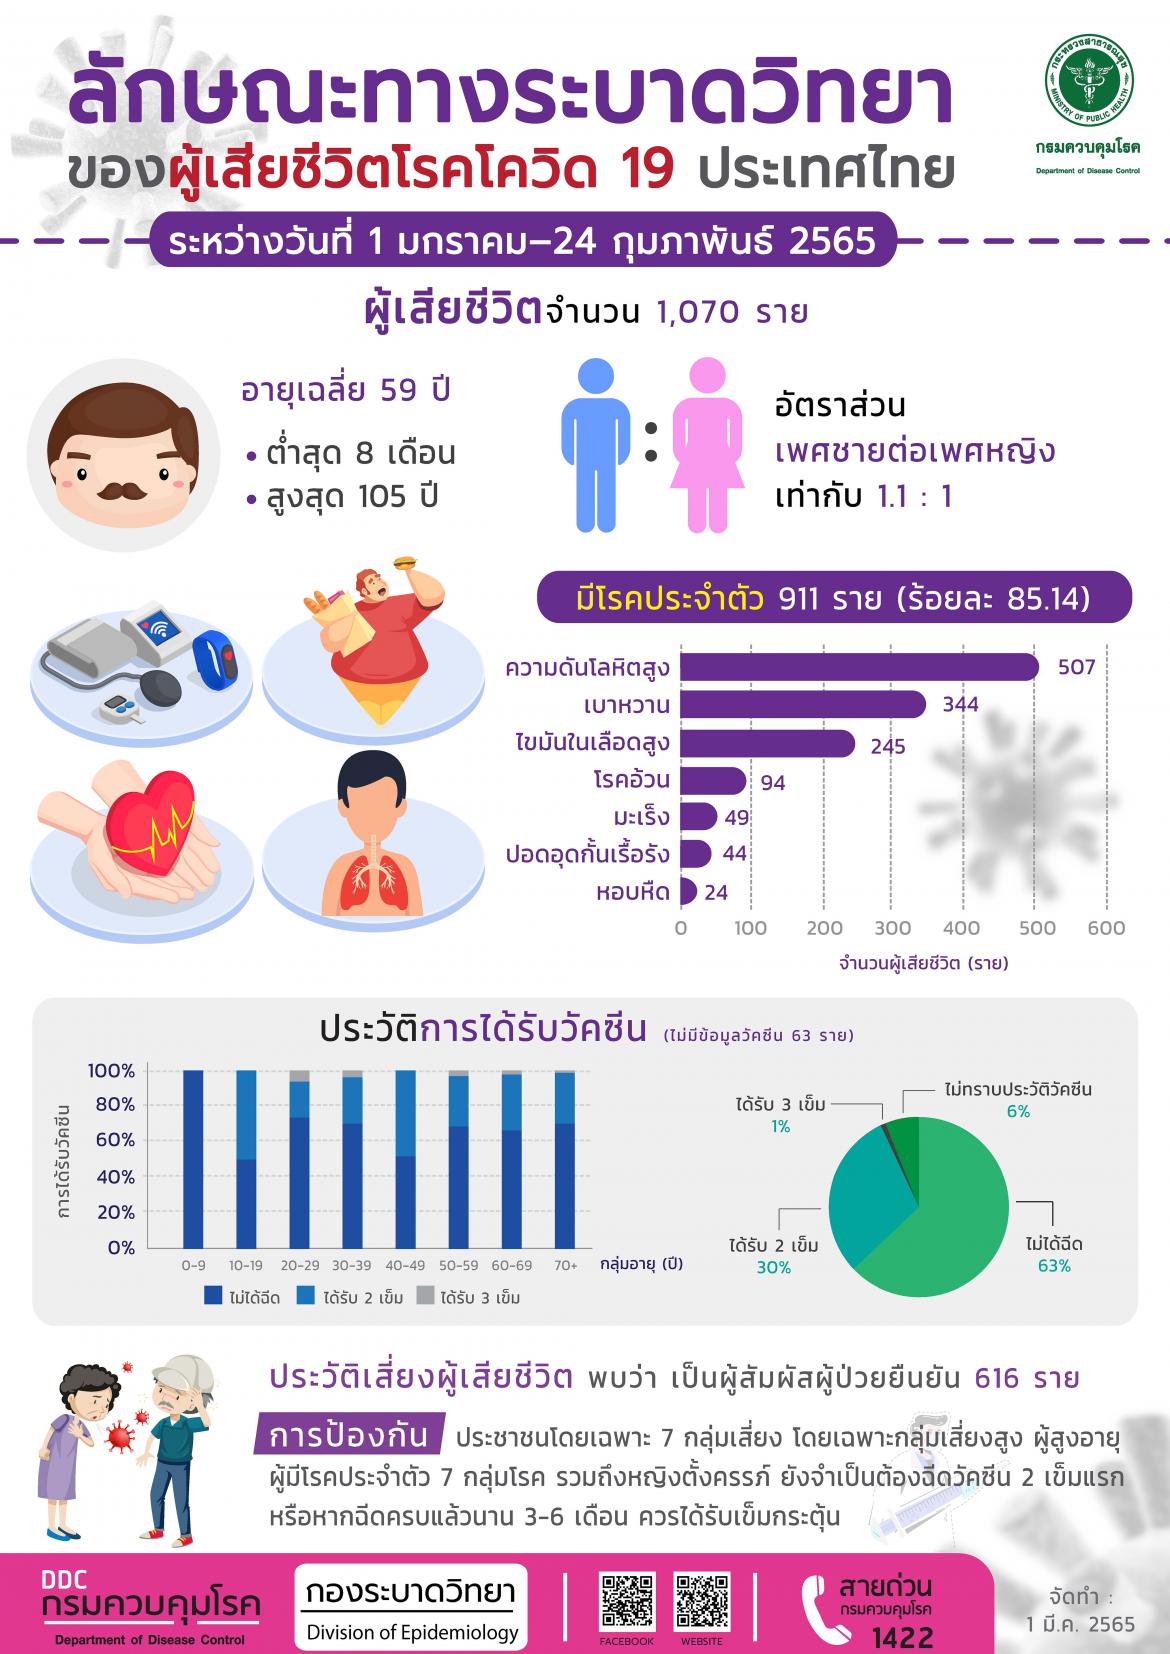 ลักษณะทางระบาดวิทยาของผู้เสียชีวิตโรคโควิด 19 ประเทศไทย ข้อมูลระหว่างวันที่ 1 มกราคม-24 กุมภาพันธ์ 2565